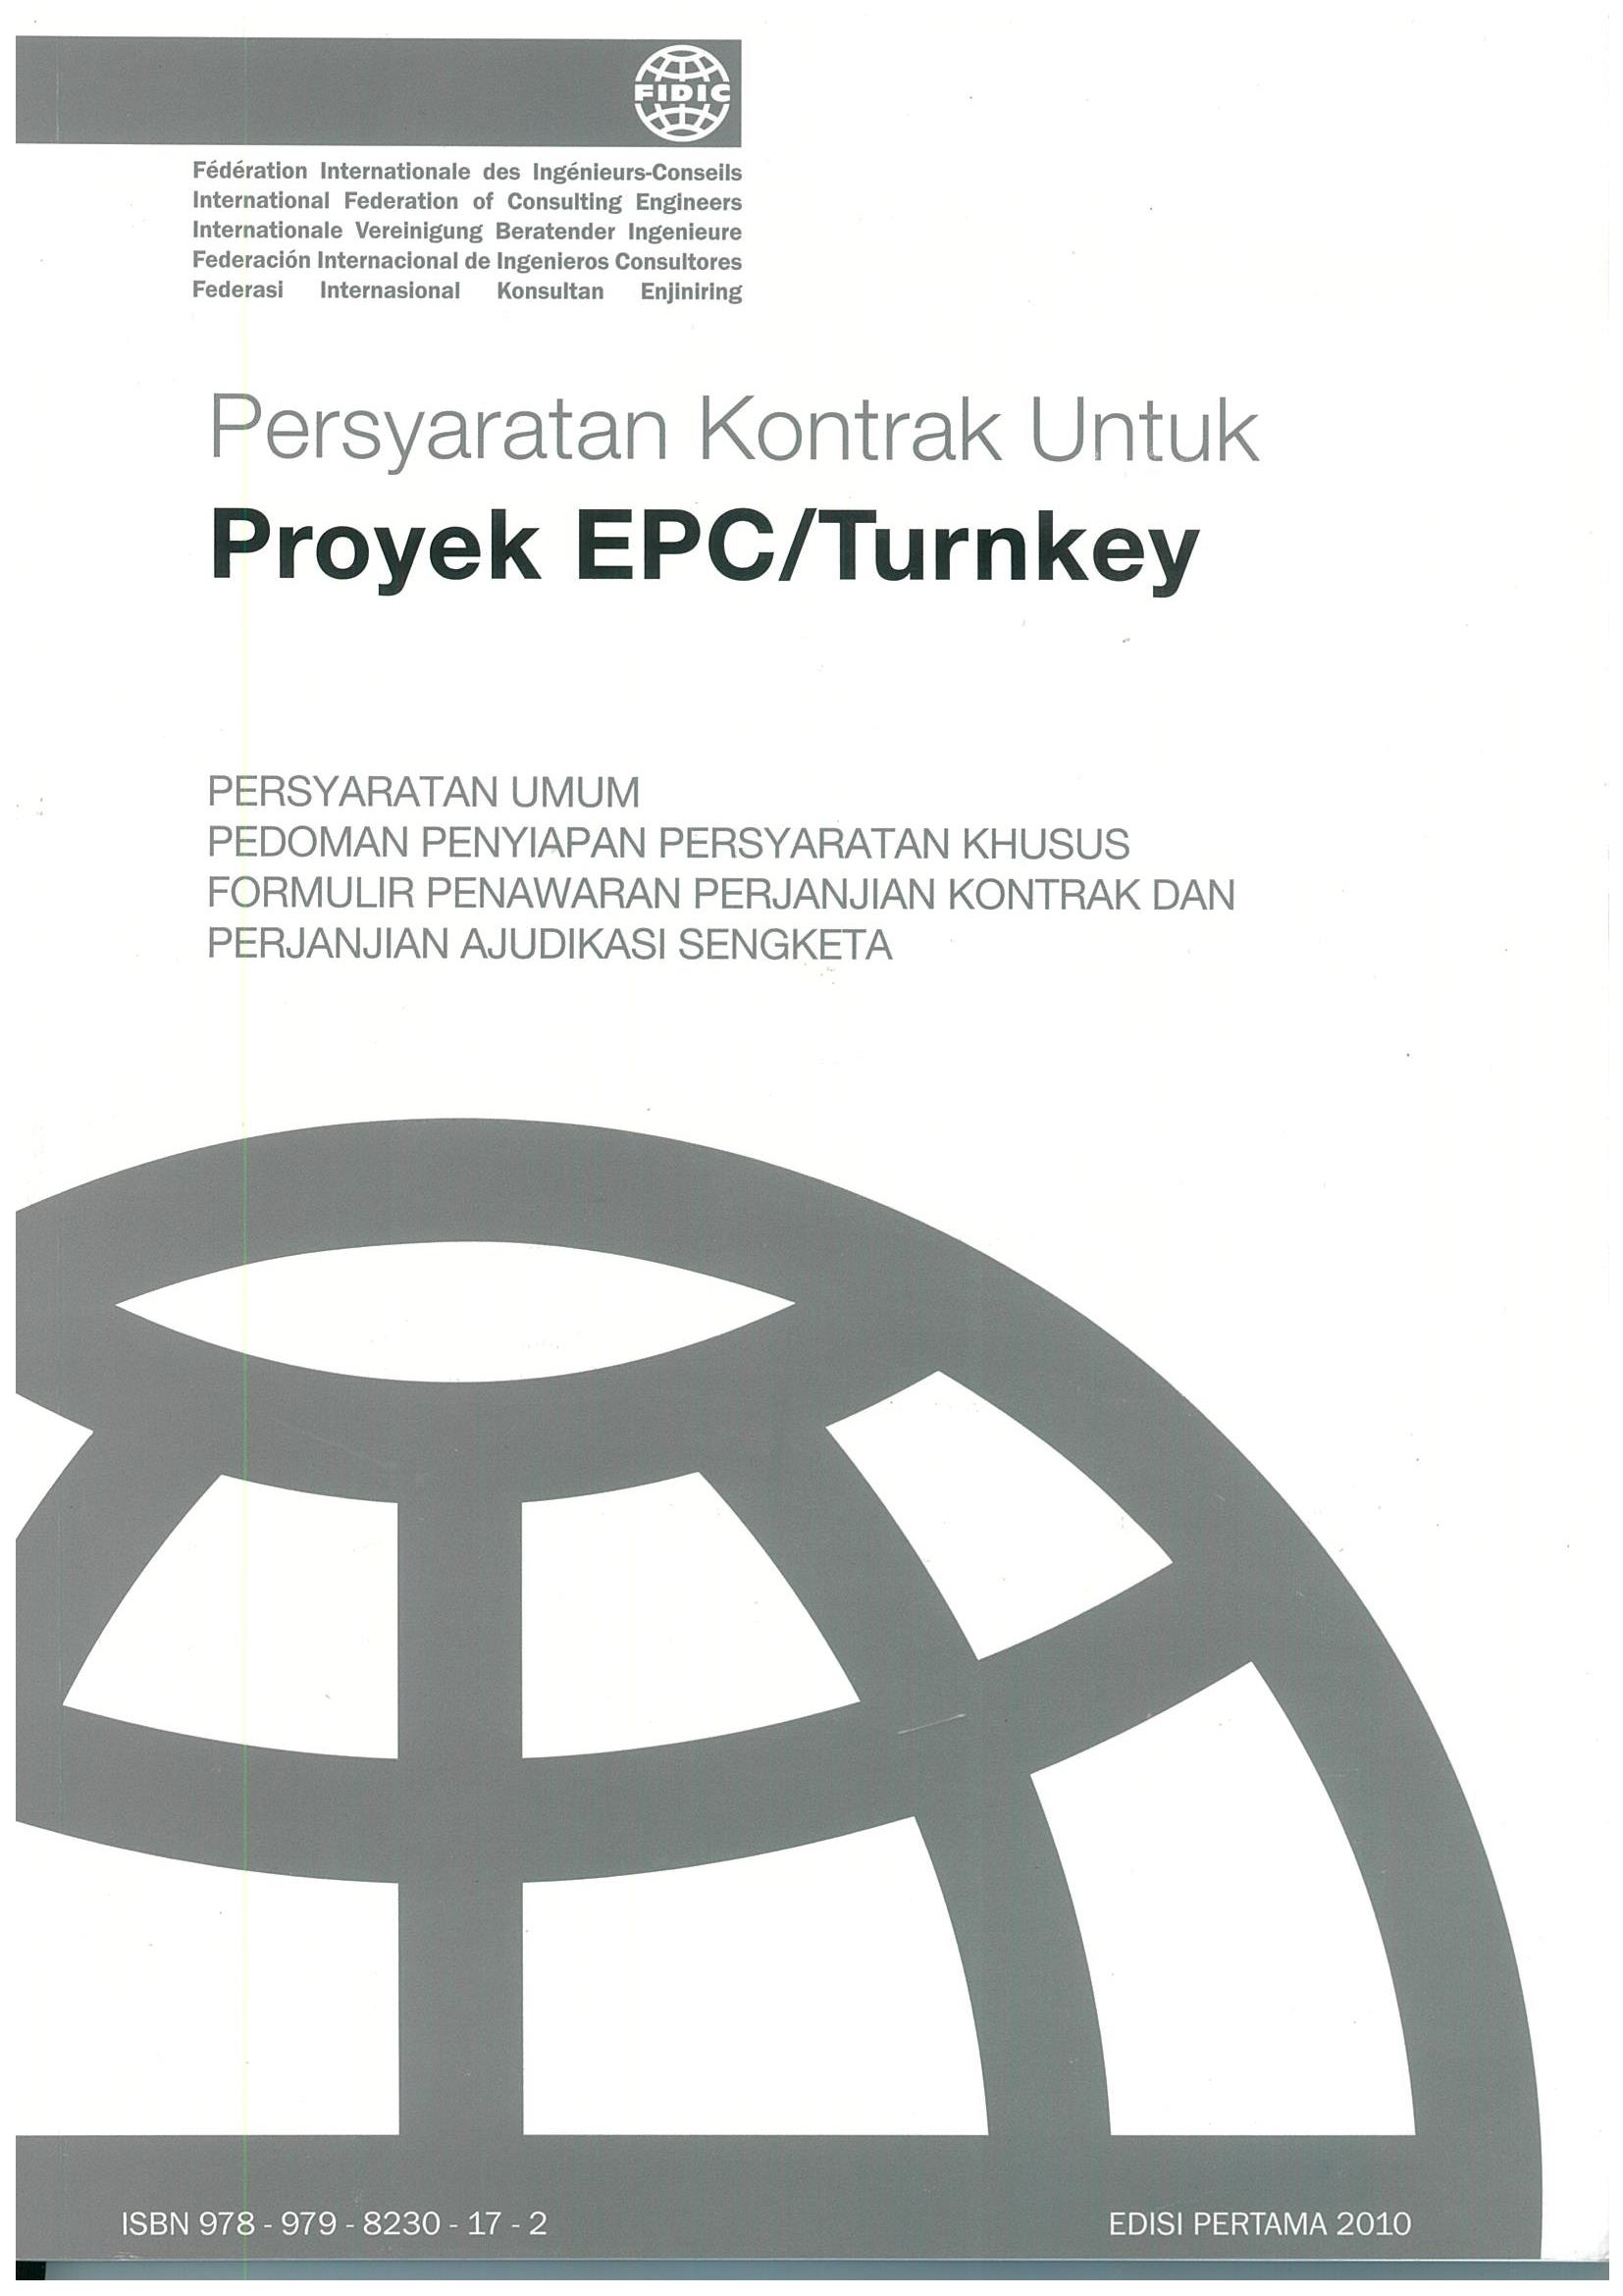 Persyaratan kontrak untuk proyek EPC / turnkey : persyaratan umum, pedoman penyiapan persyaratan khusus, formulir penawaran perjanjian kontrak dan perjanjian ajudikasi sengketa